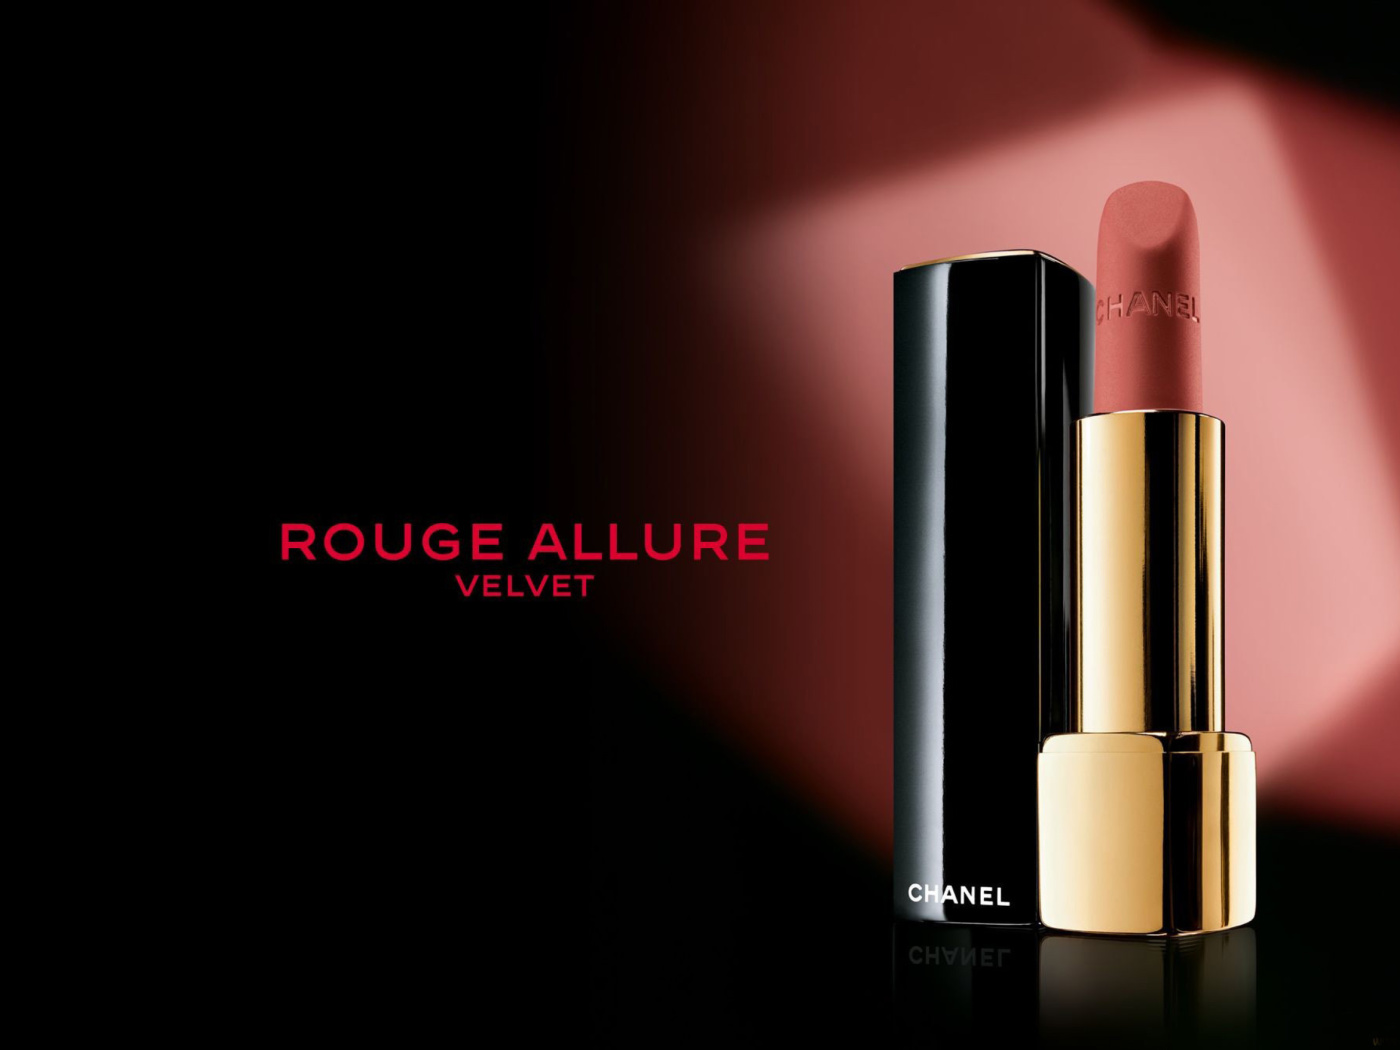 Sfondi Chanel Rouge Allure Velvet 1400x1050